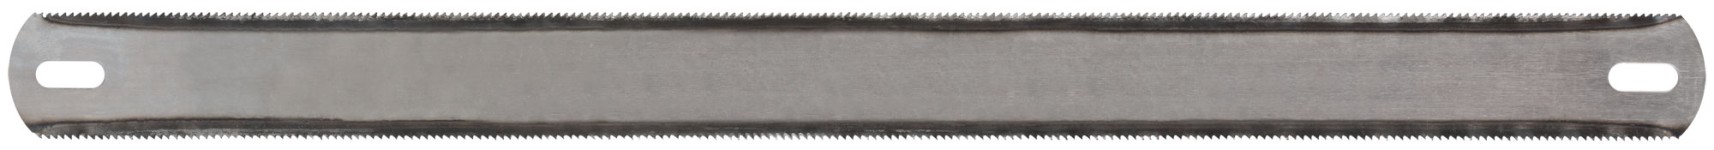 Полотна ножовочные по металлу, каленый зуб, широкие двусторонние  300х25 мм, 36 шт.